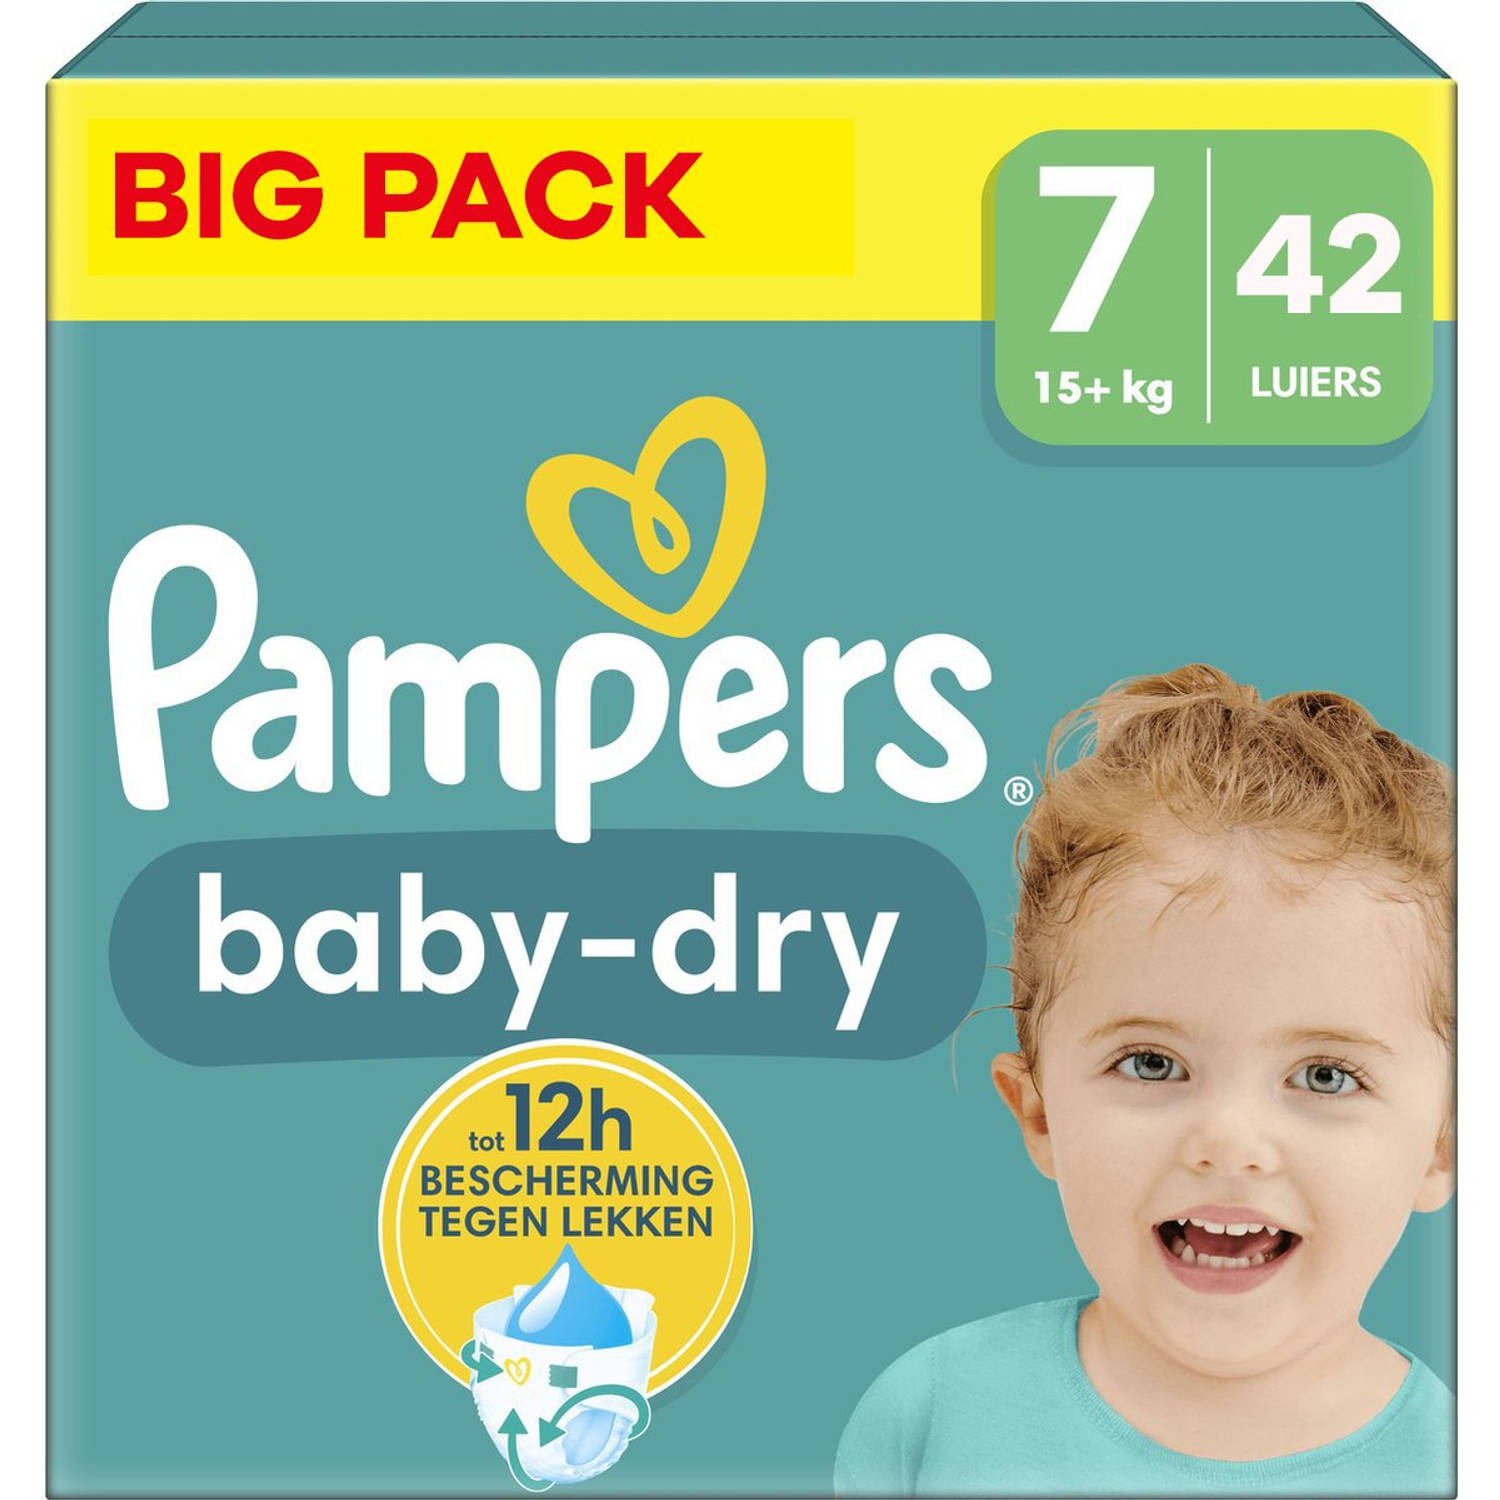 Pampers - Baby Dry - Maat 7 - Small Pack - 42 stuks - 15+ KG